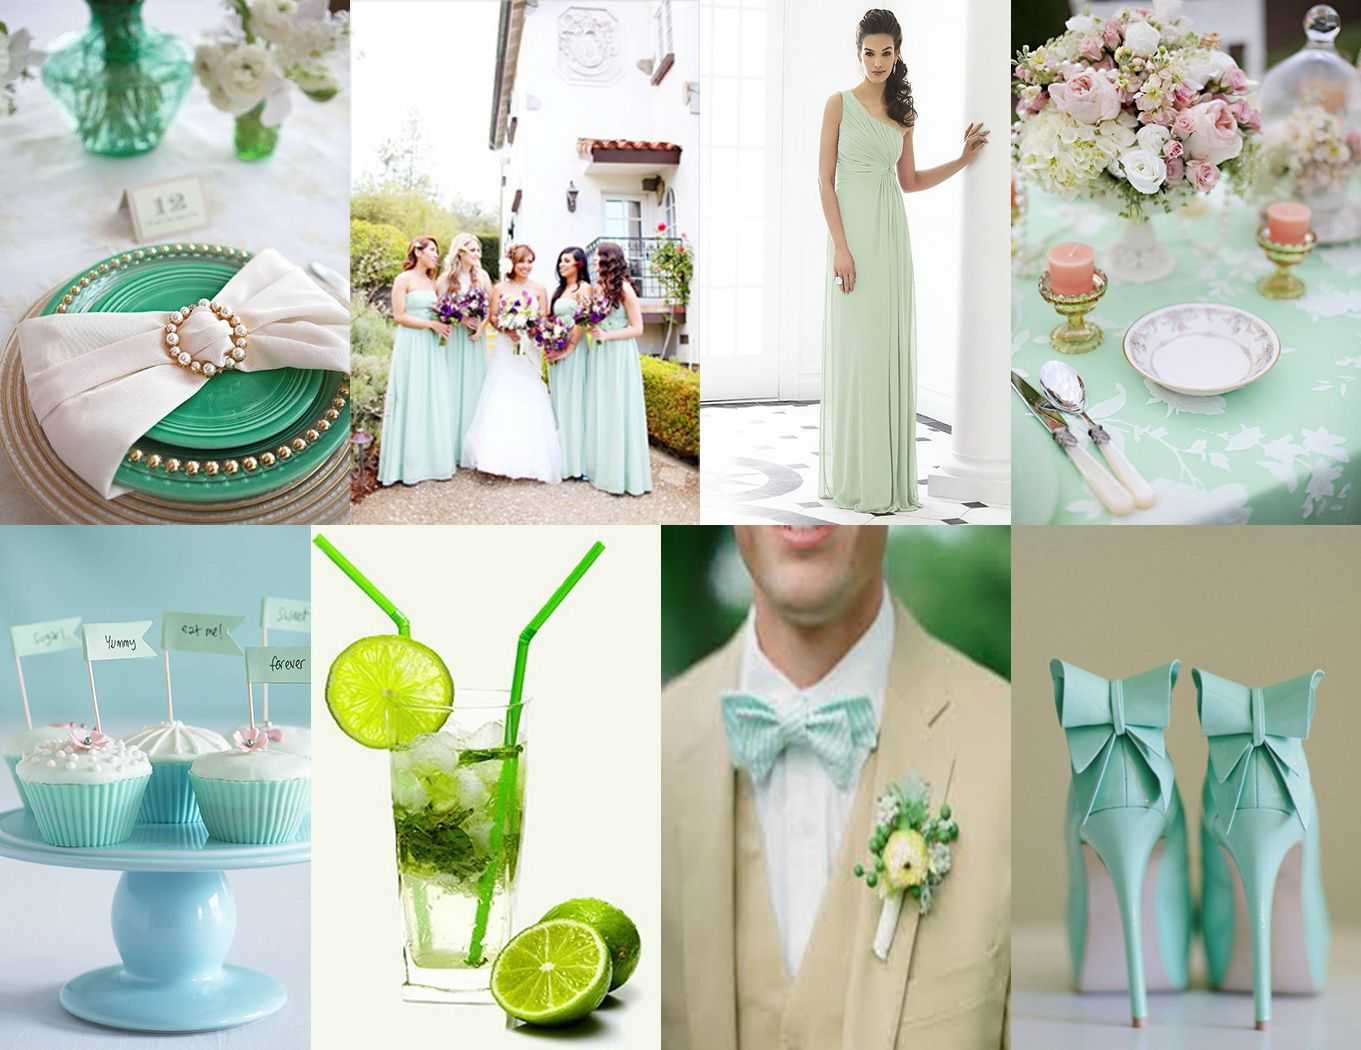 Свадьба в пудровом цвете: образы, декор, аксессуары (фото)